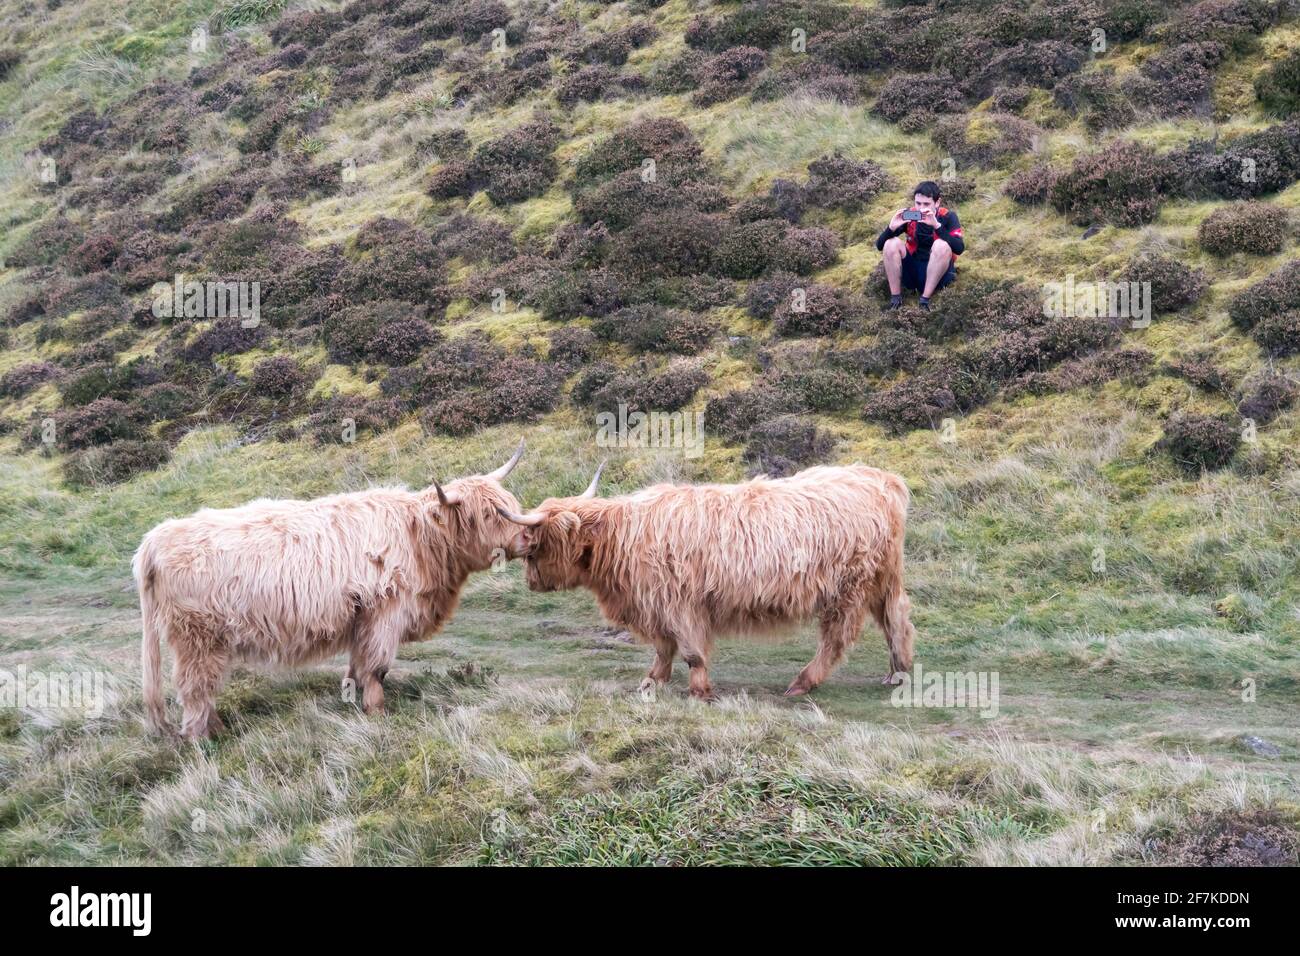 Un hombre fotografiando vacas de tierras altas de corta distancia Foto de stock